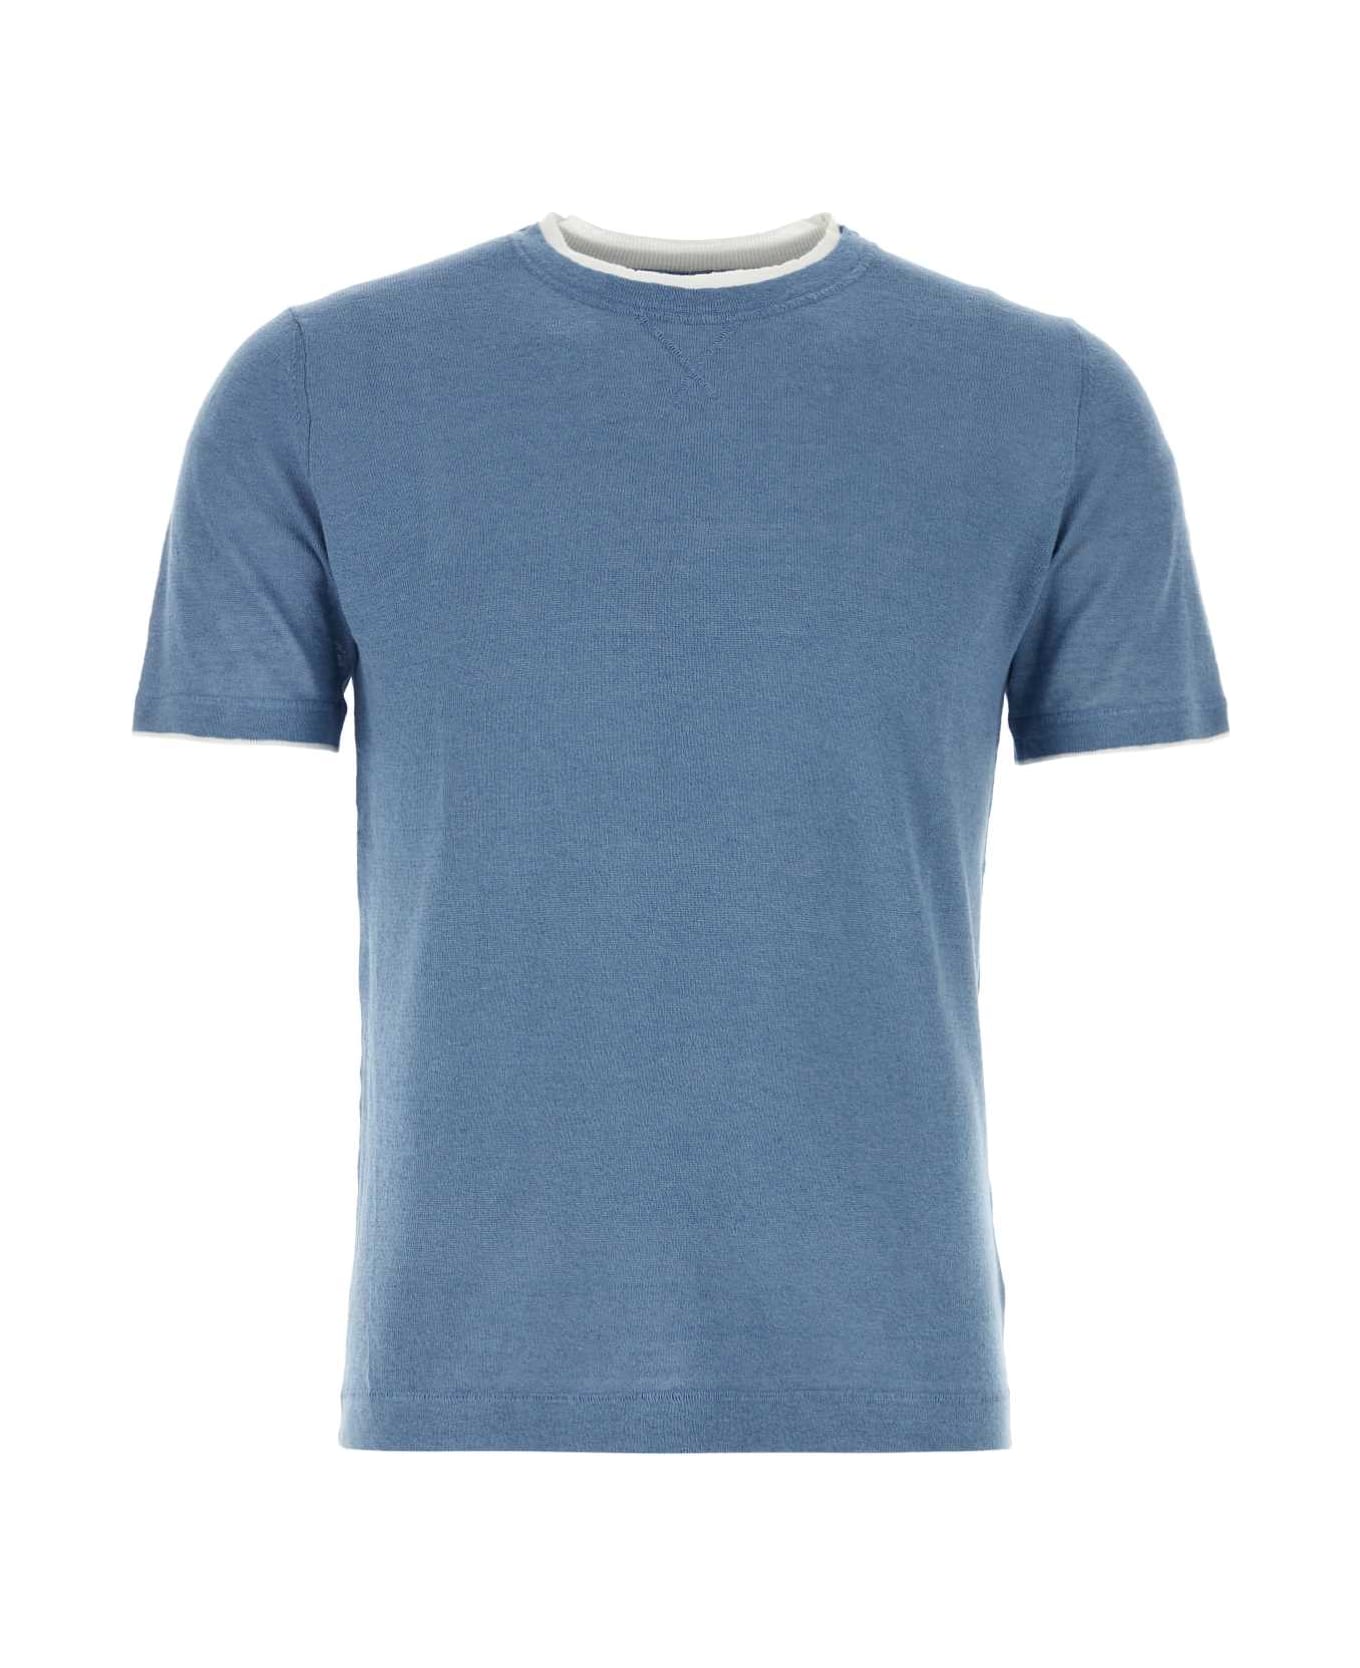 Fedeli Air Force Blue Linen Blend Fox T-shirt - CARTAZUCCHERO